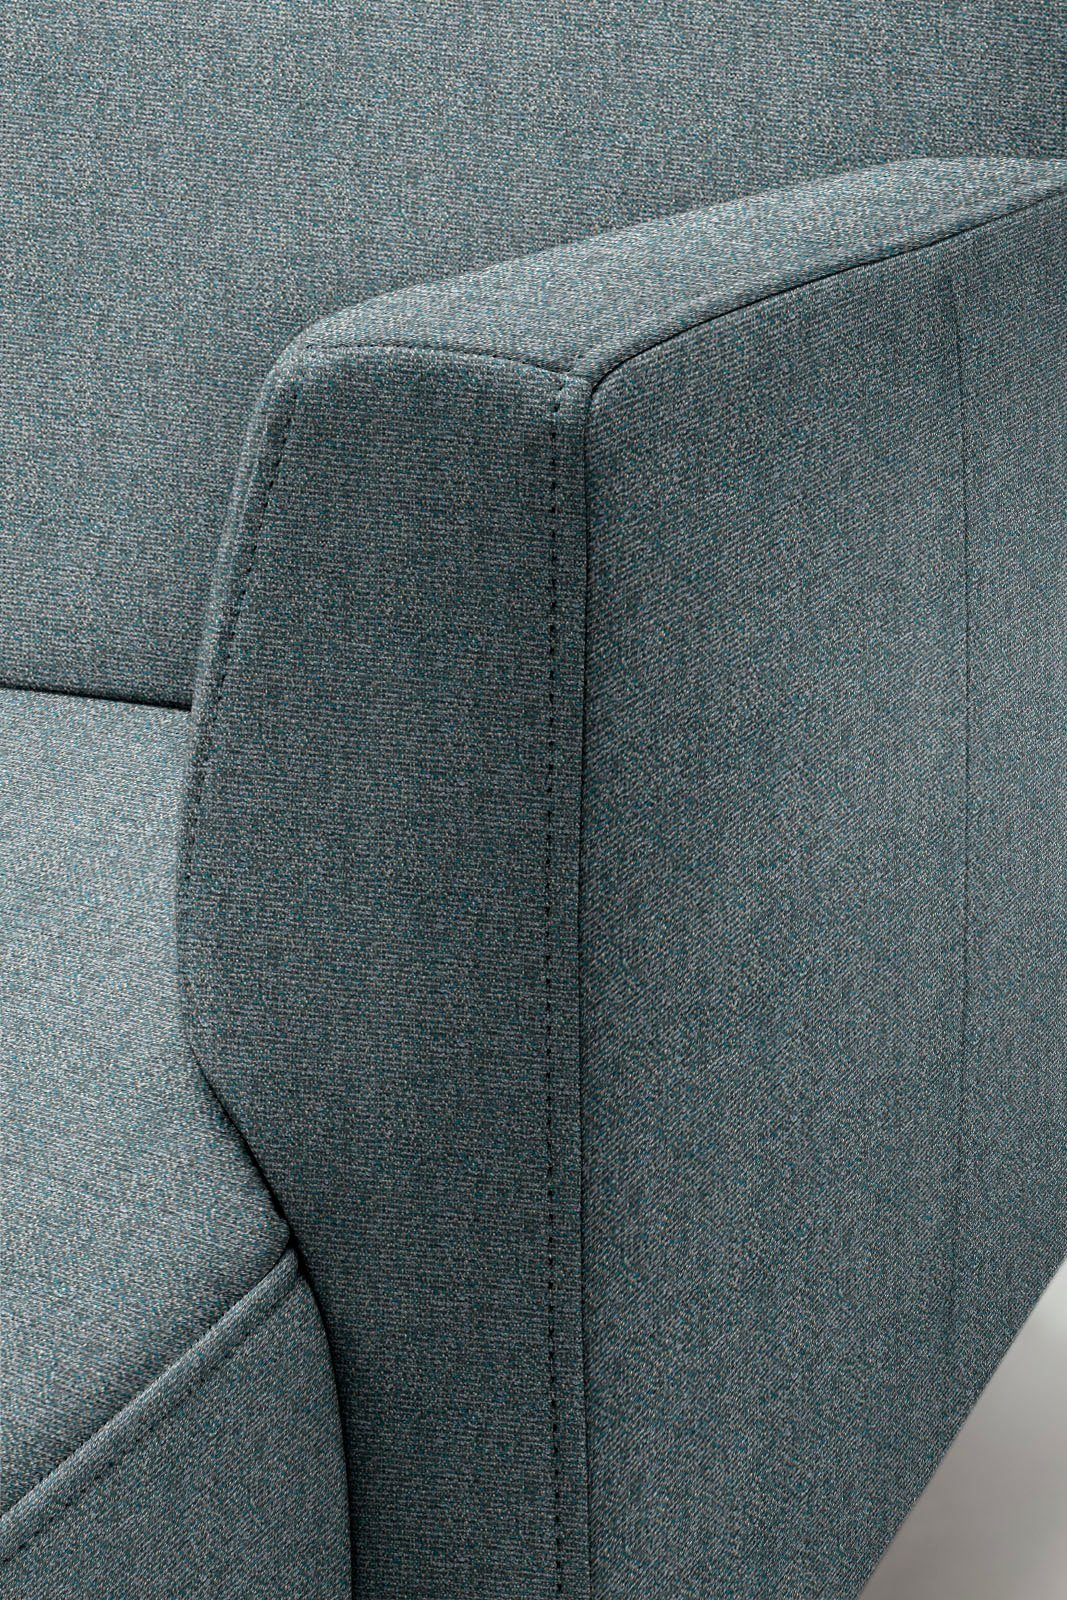 sofa Optik, minimalistischer, hs.446, cm Breite schwereloser 317 in Ecksofa hülsta